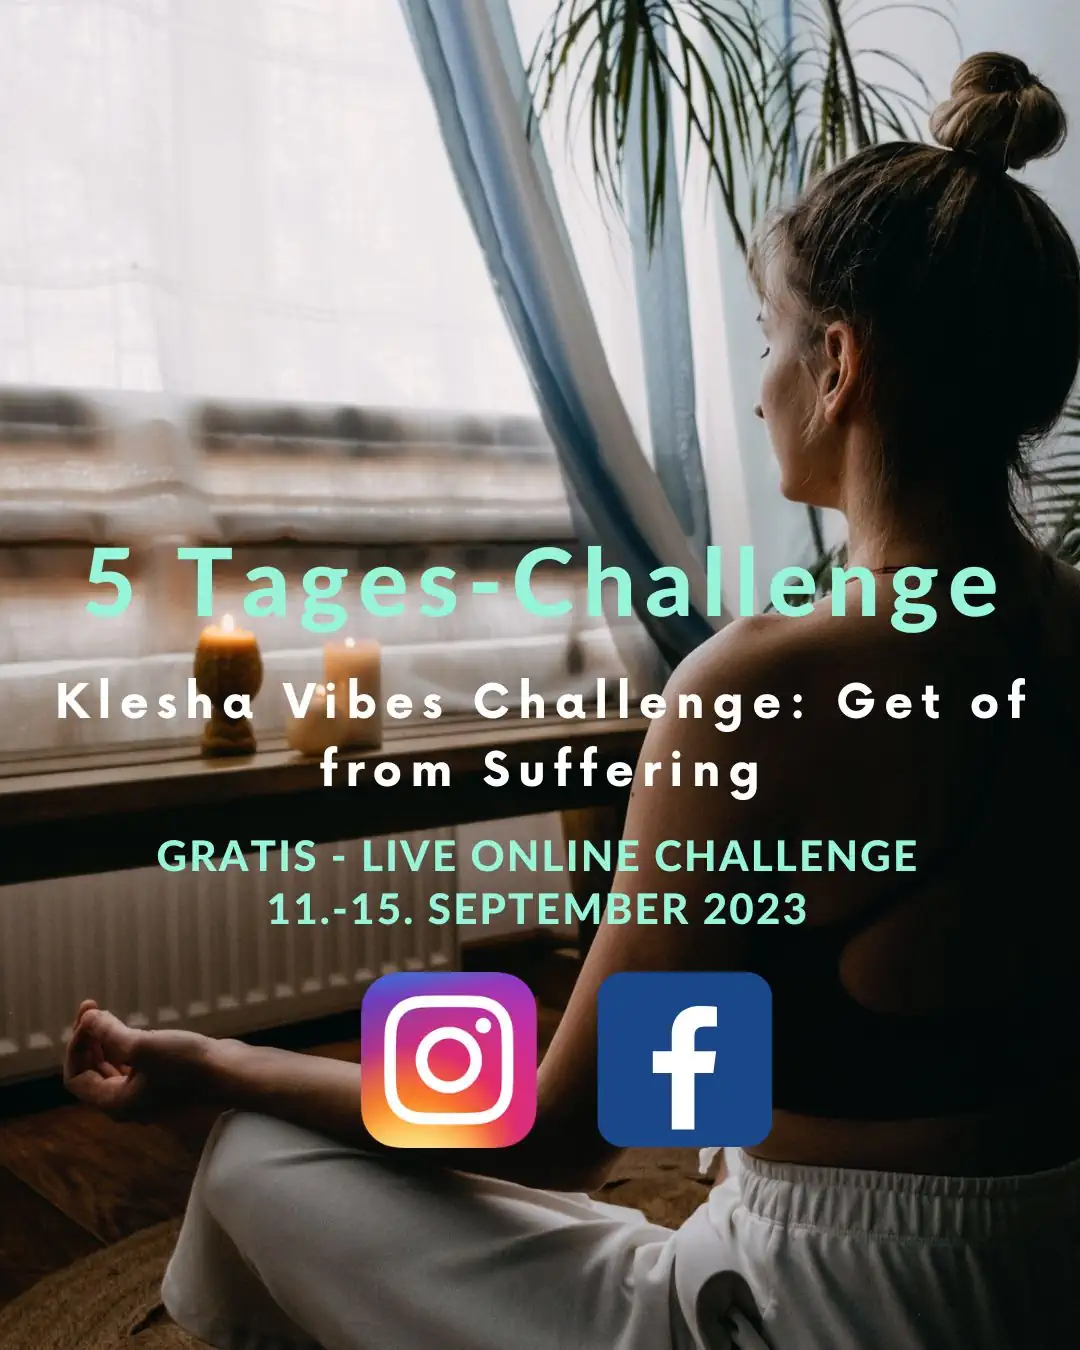 Klesha Vibes Challenge